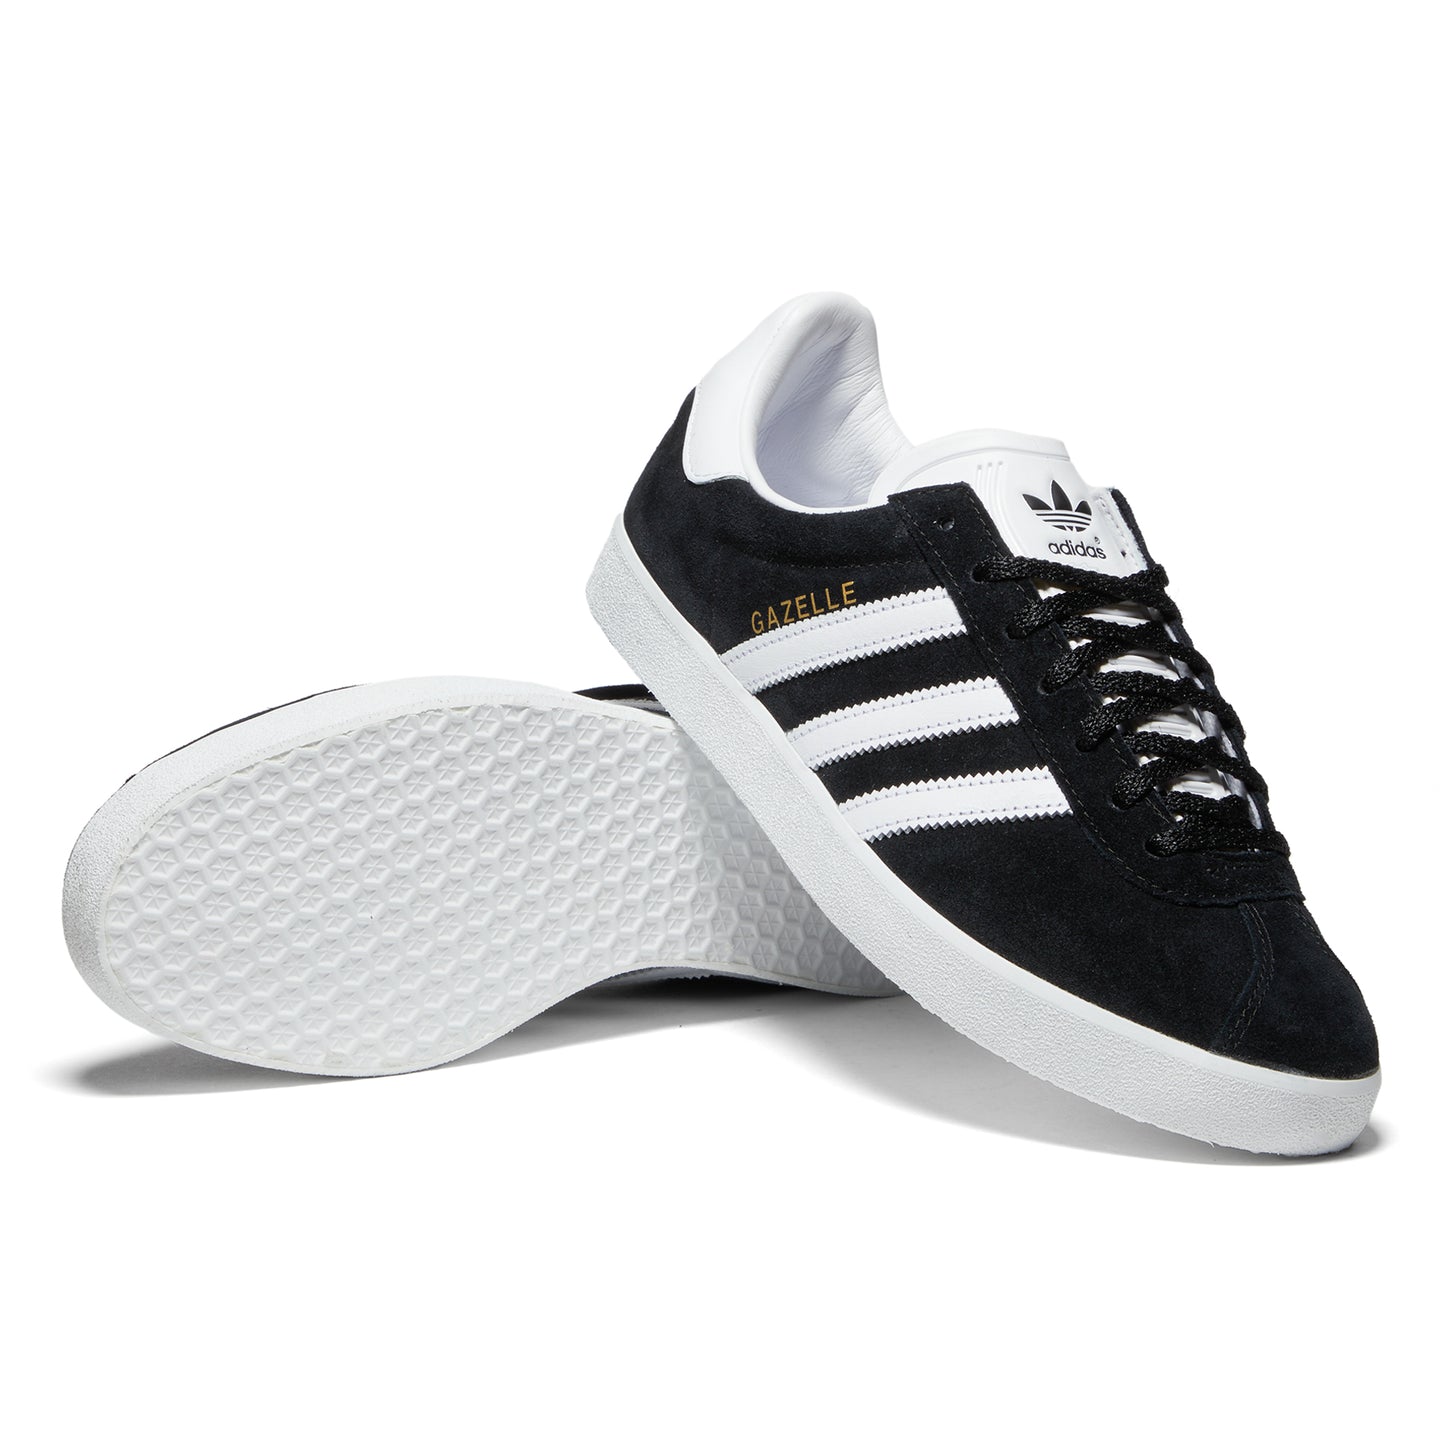 Adidas Gazelle 85 (Core Black/Feather White)